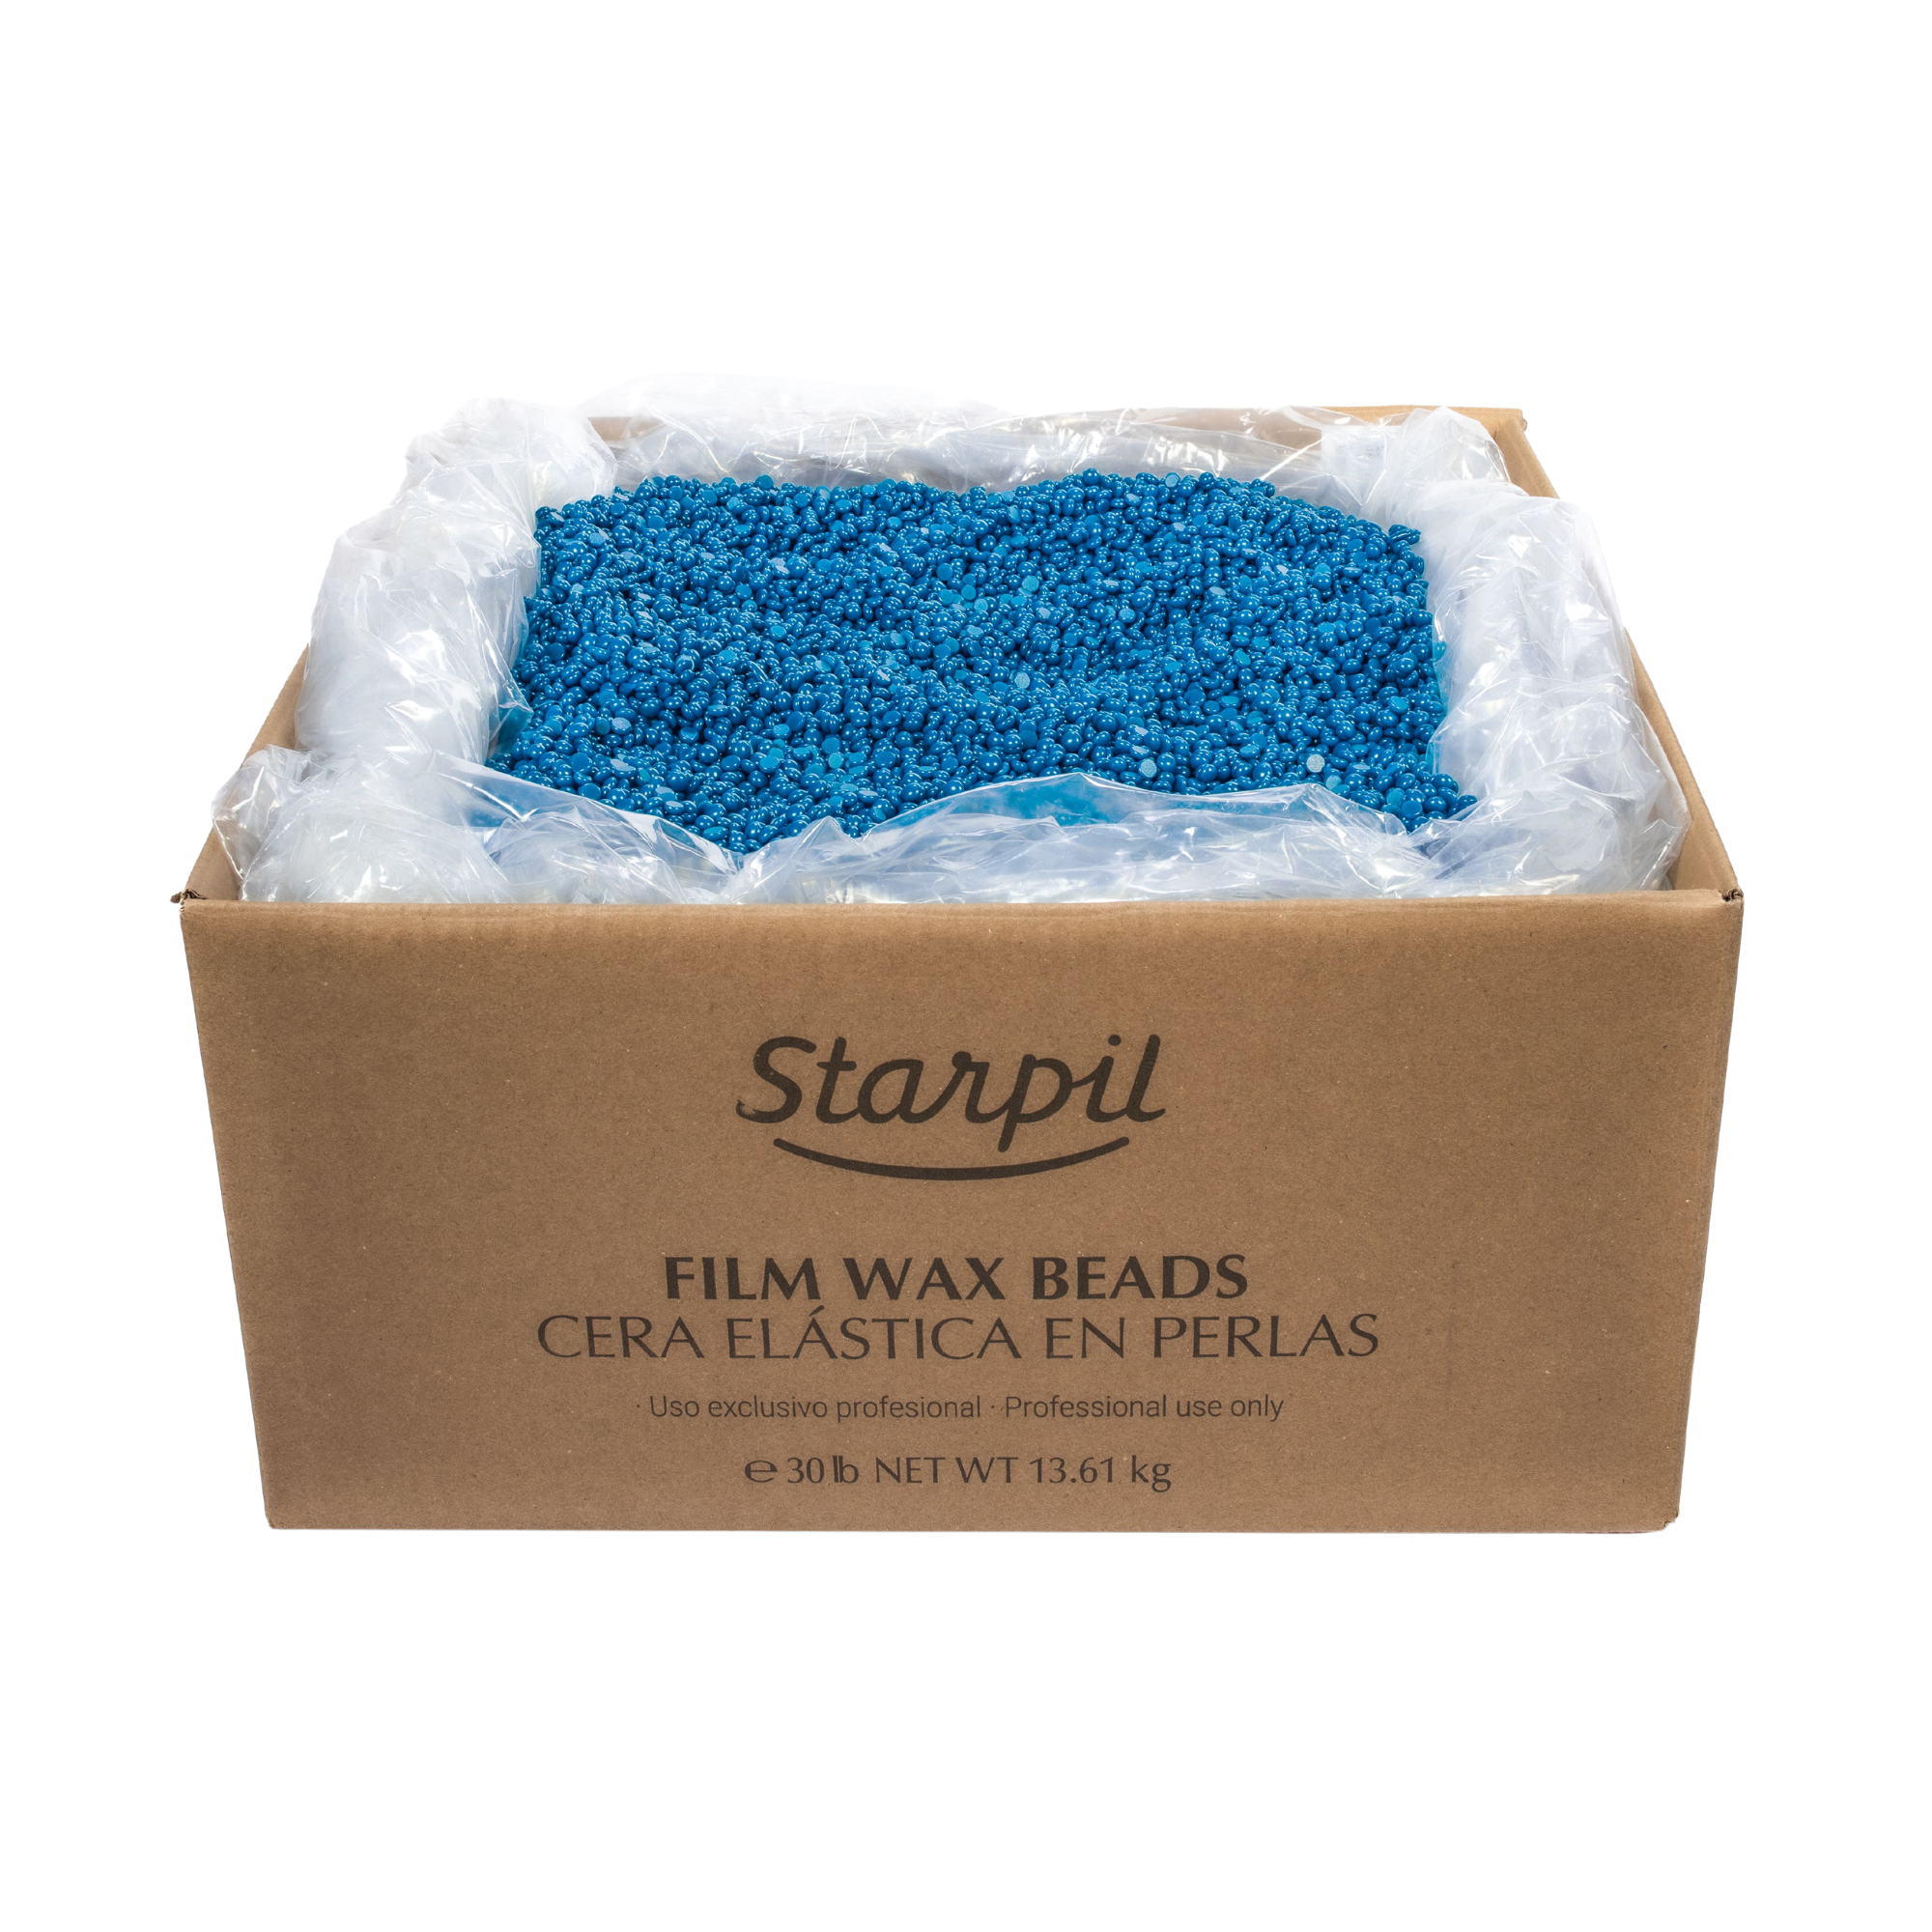 NEW Blue Film Hard Wax Beads - Rosin Free - 30lb